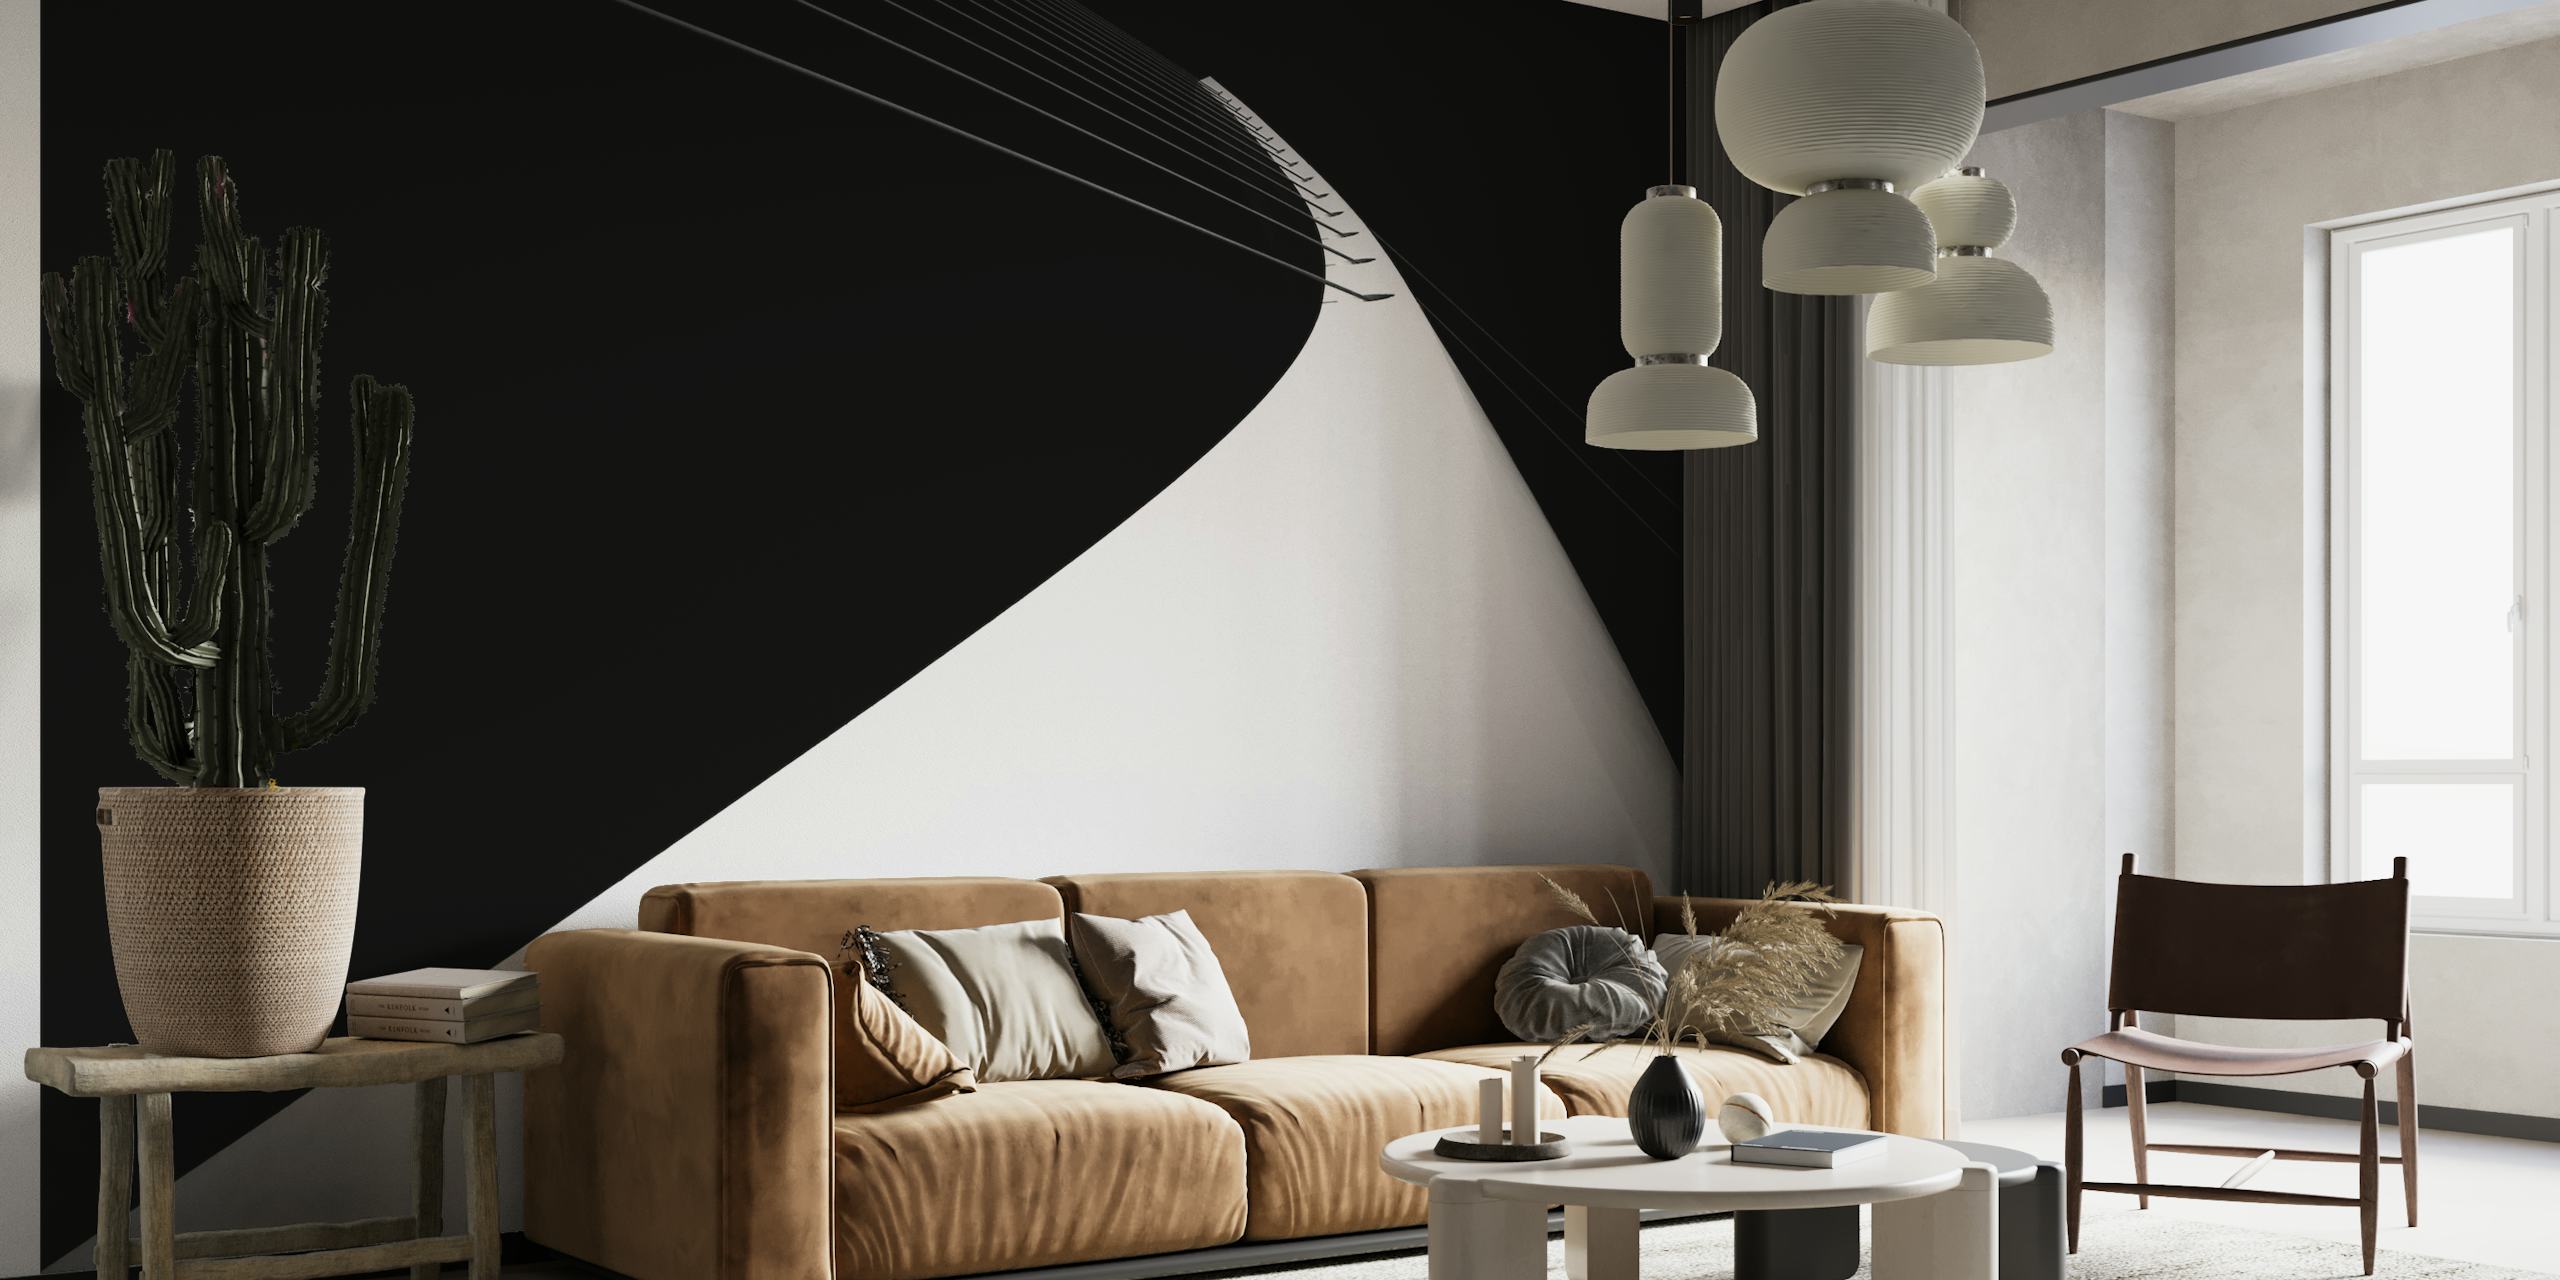 Schwarz-weißes Wandgemälde, das einen minimalistischen Bogen zeigt, der in Richtung eines dunklen Himmels reicht